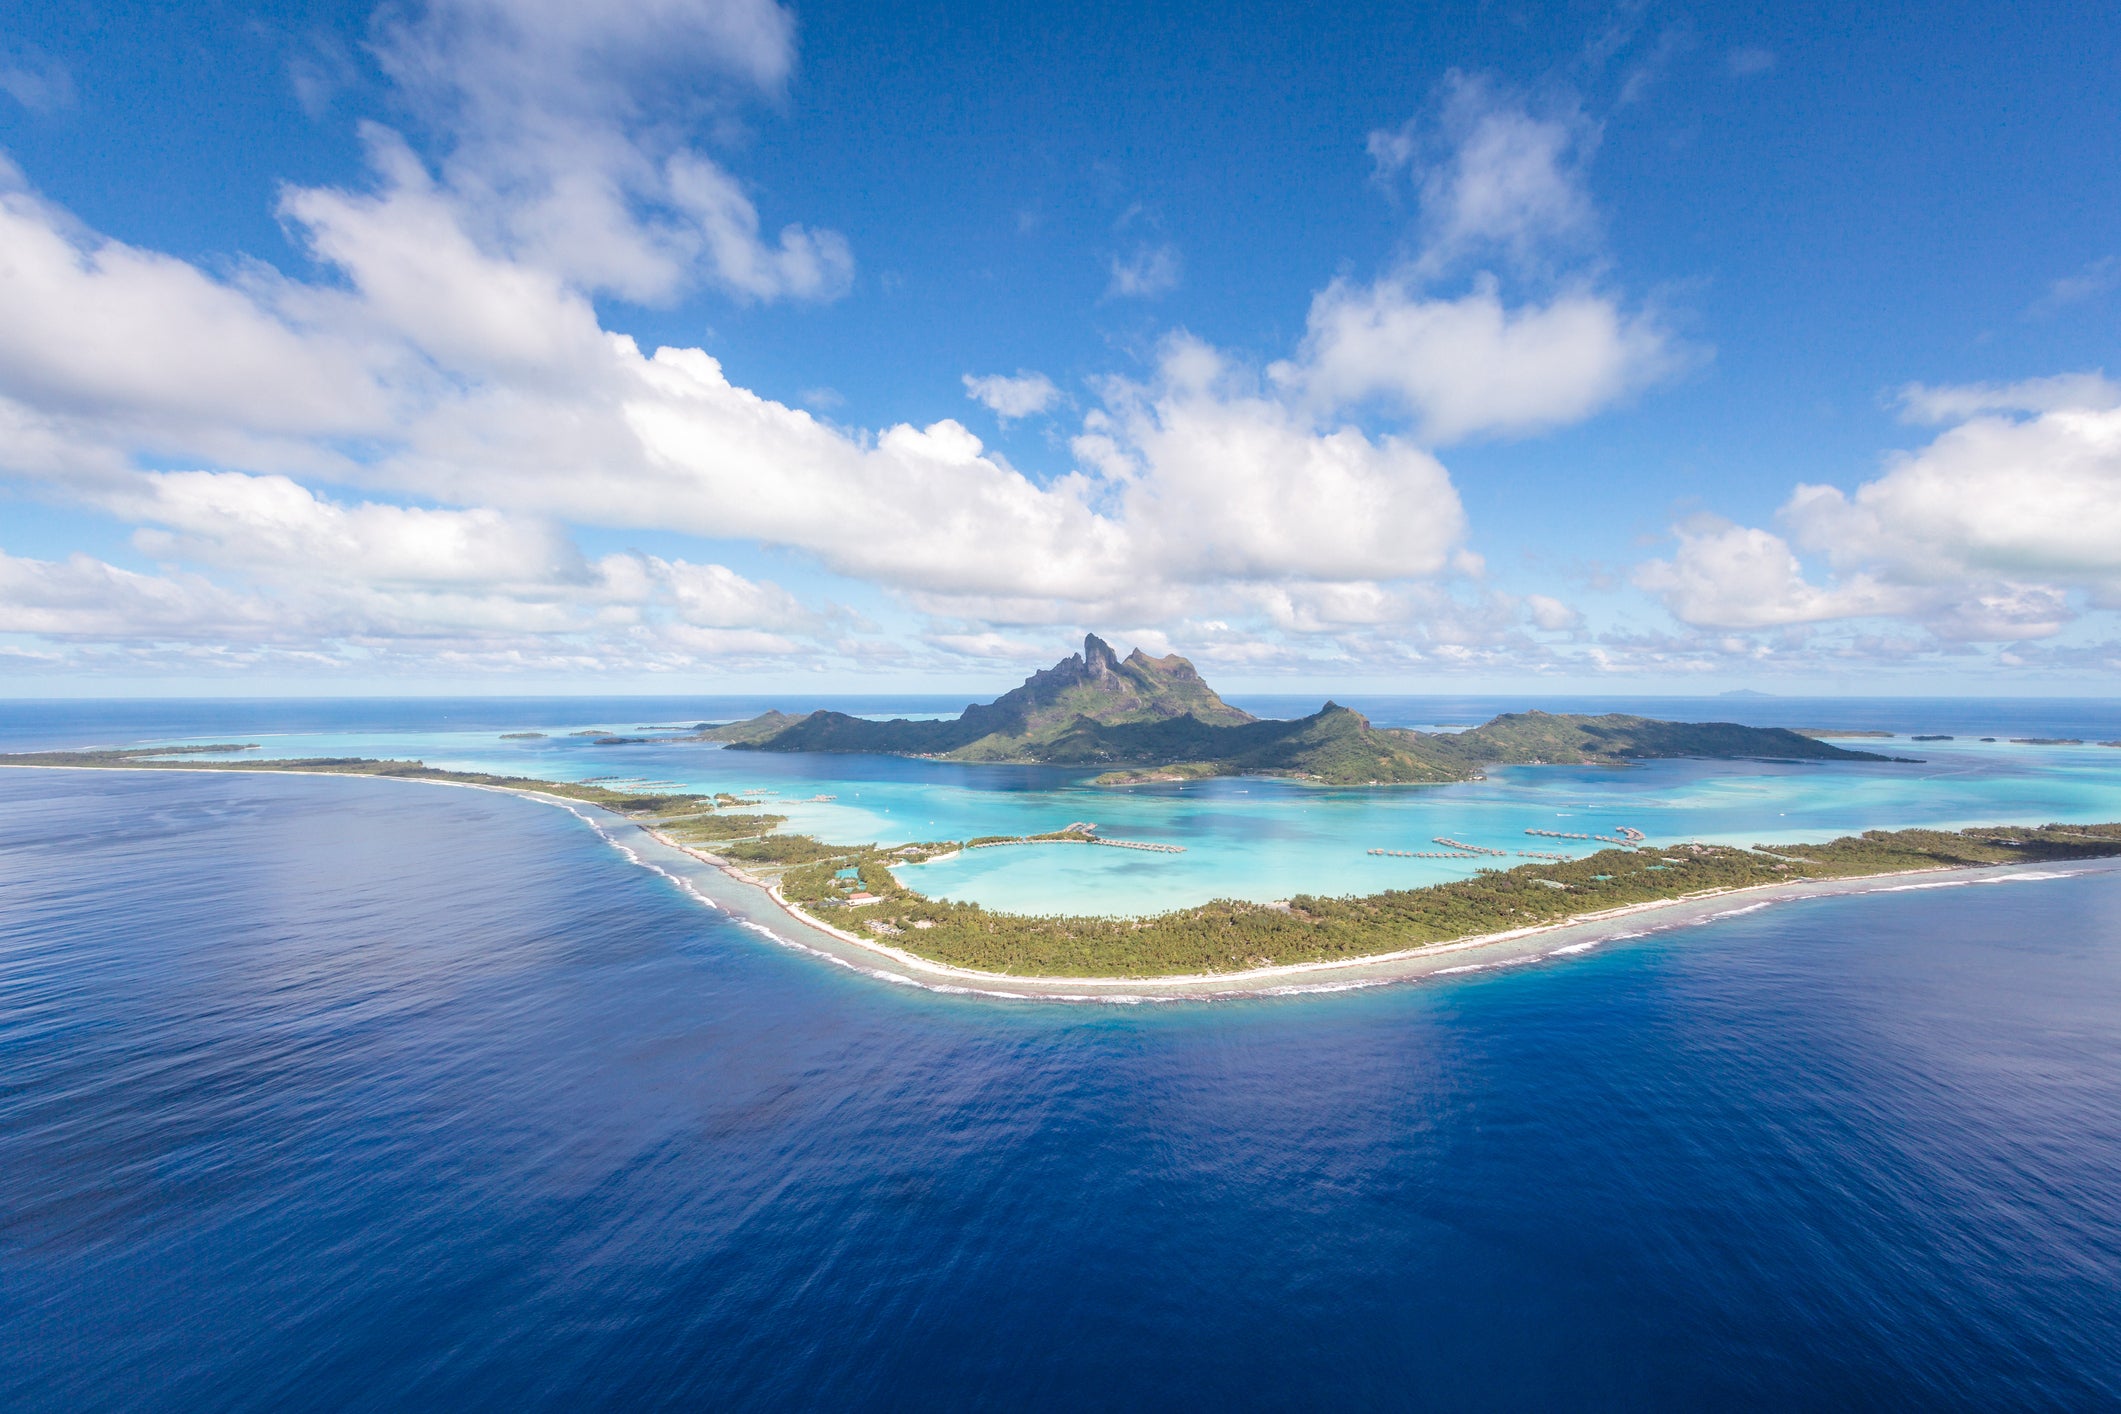 Aerial view of the island of Bora Bora, French Polynesia